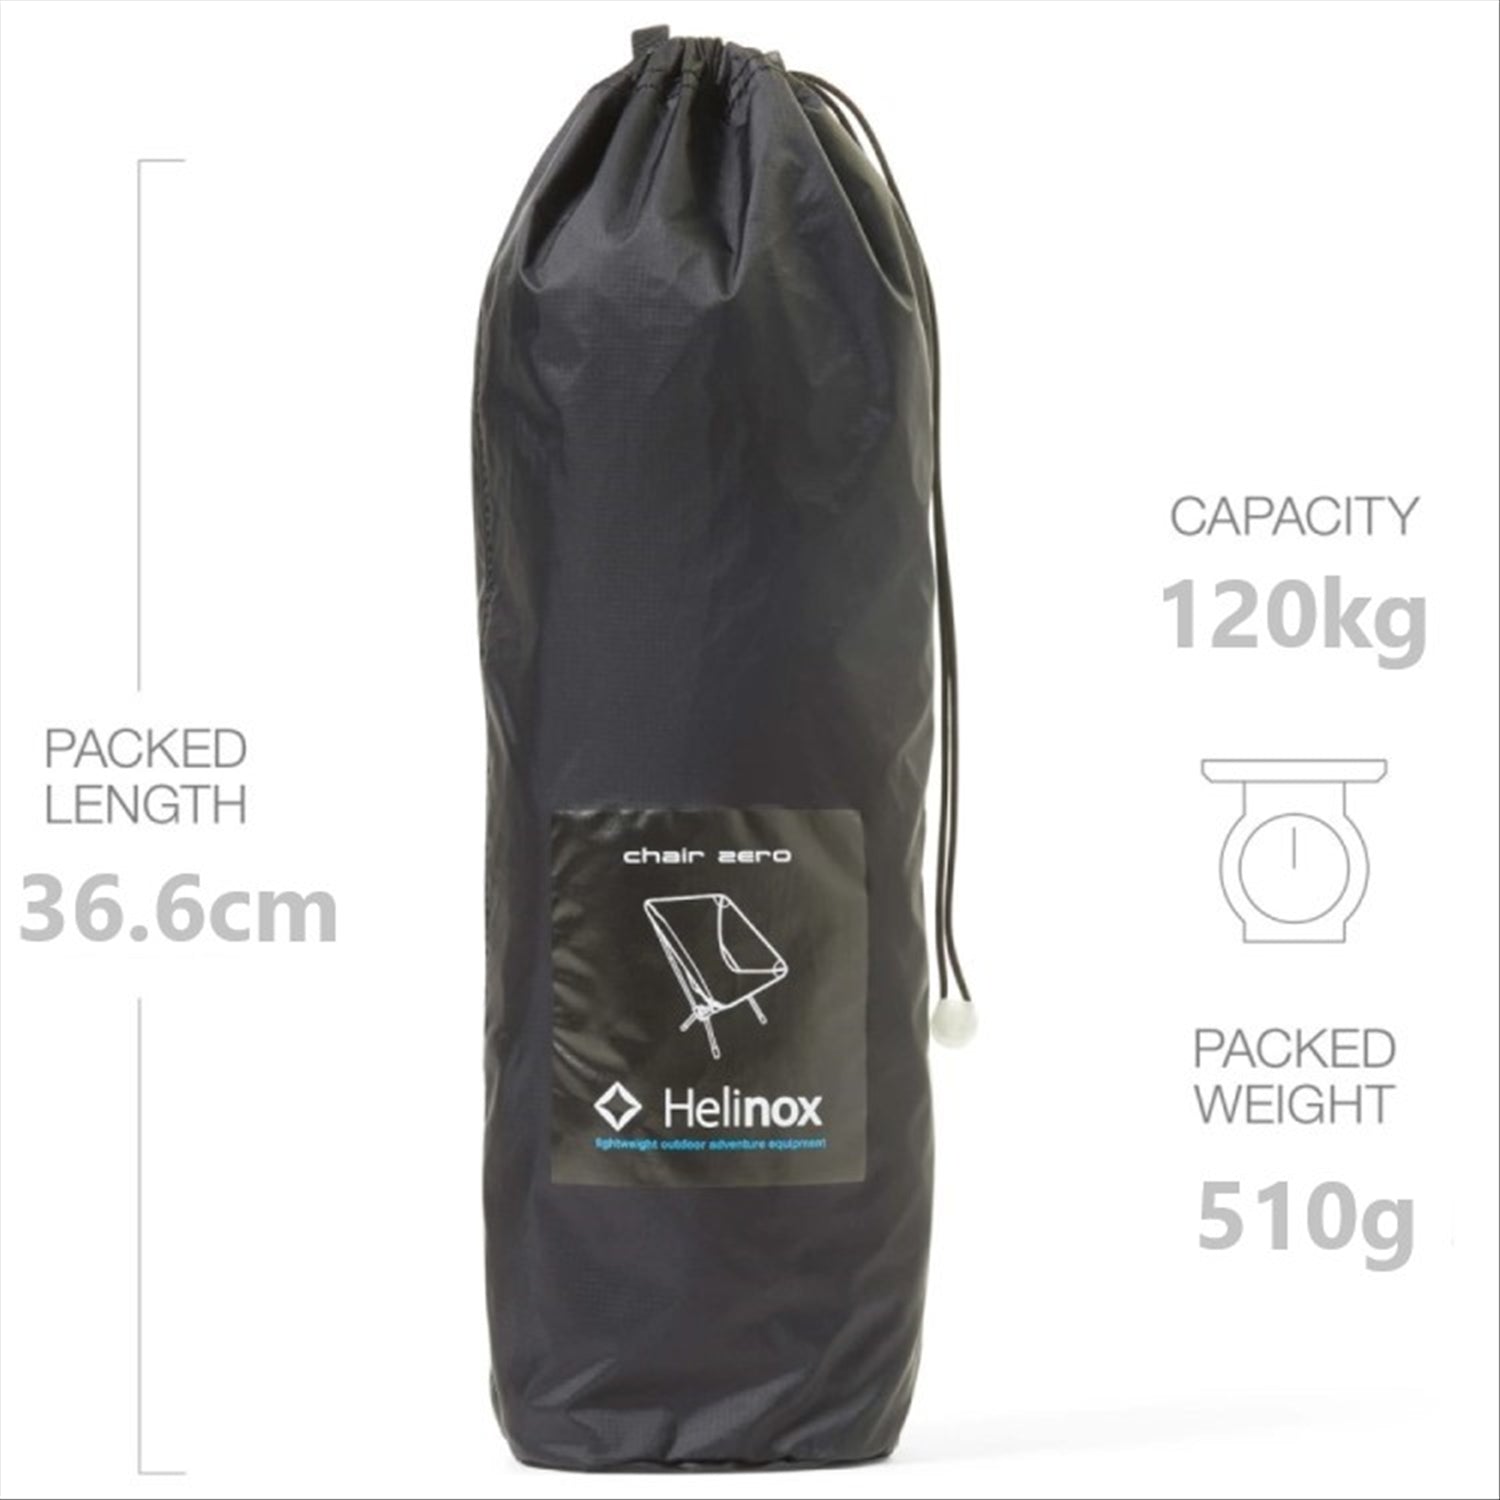 Helinox Helinox Chair Zero - Ultralight 0.49kg